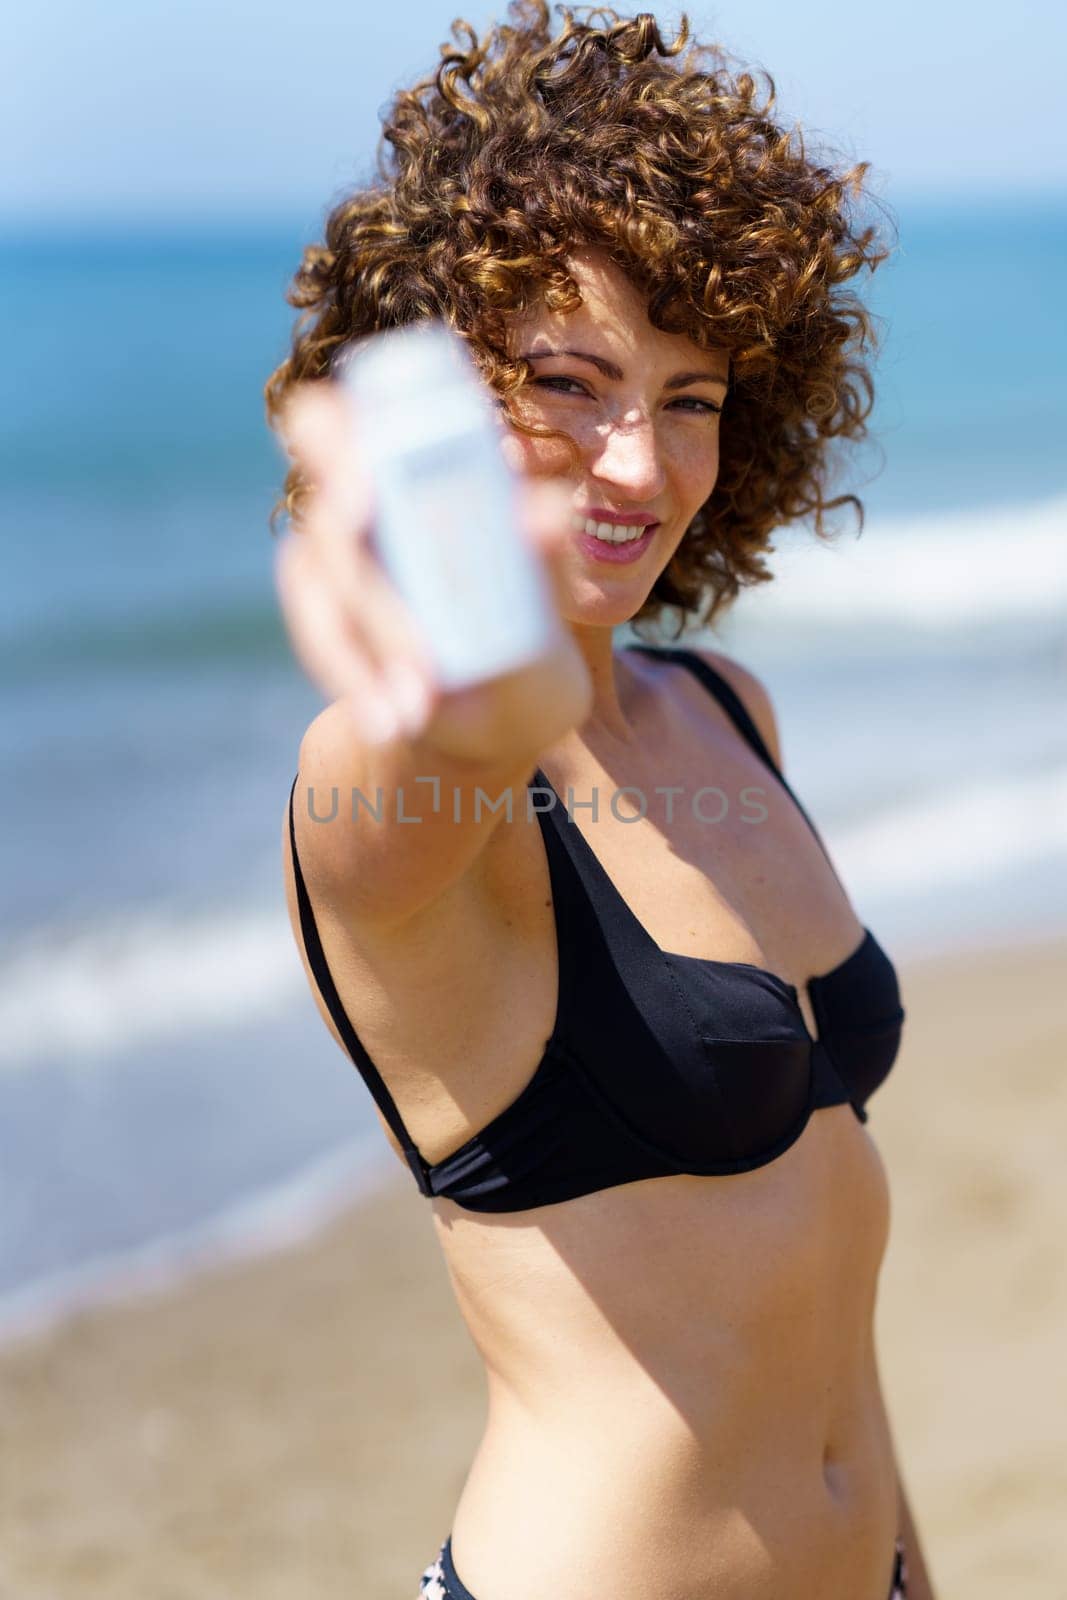 Smiling woman showing blank bottle of sunscreen near ocean by javiindy